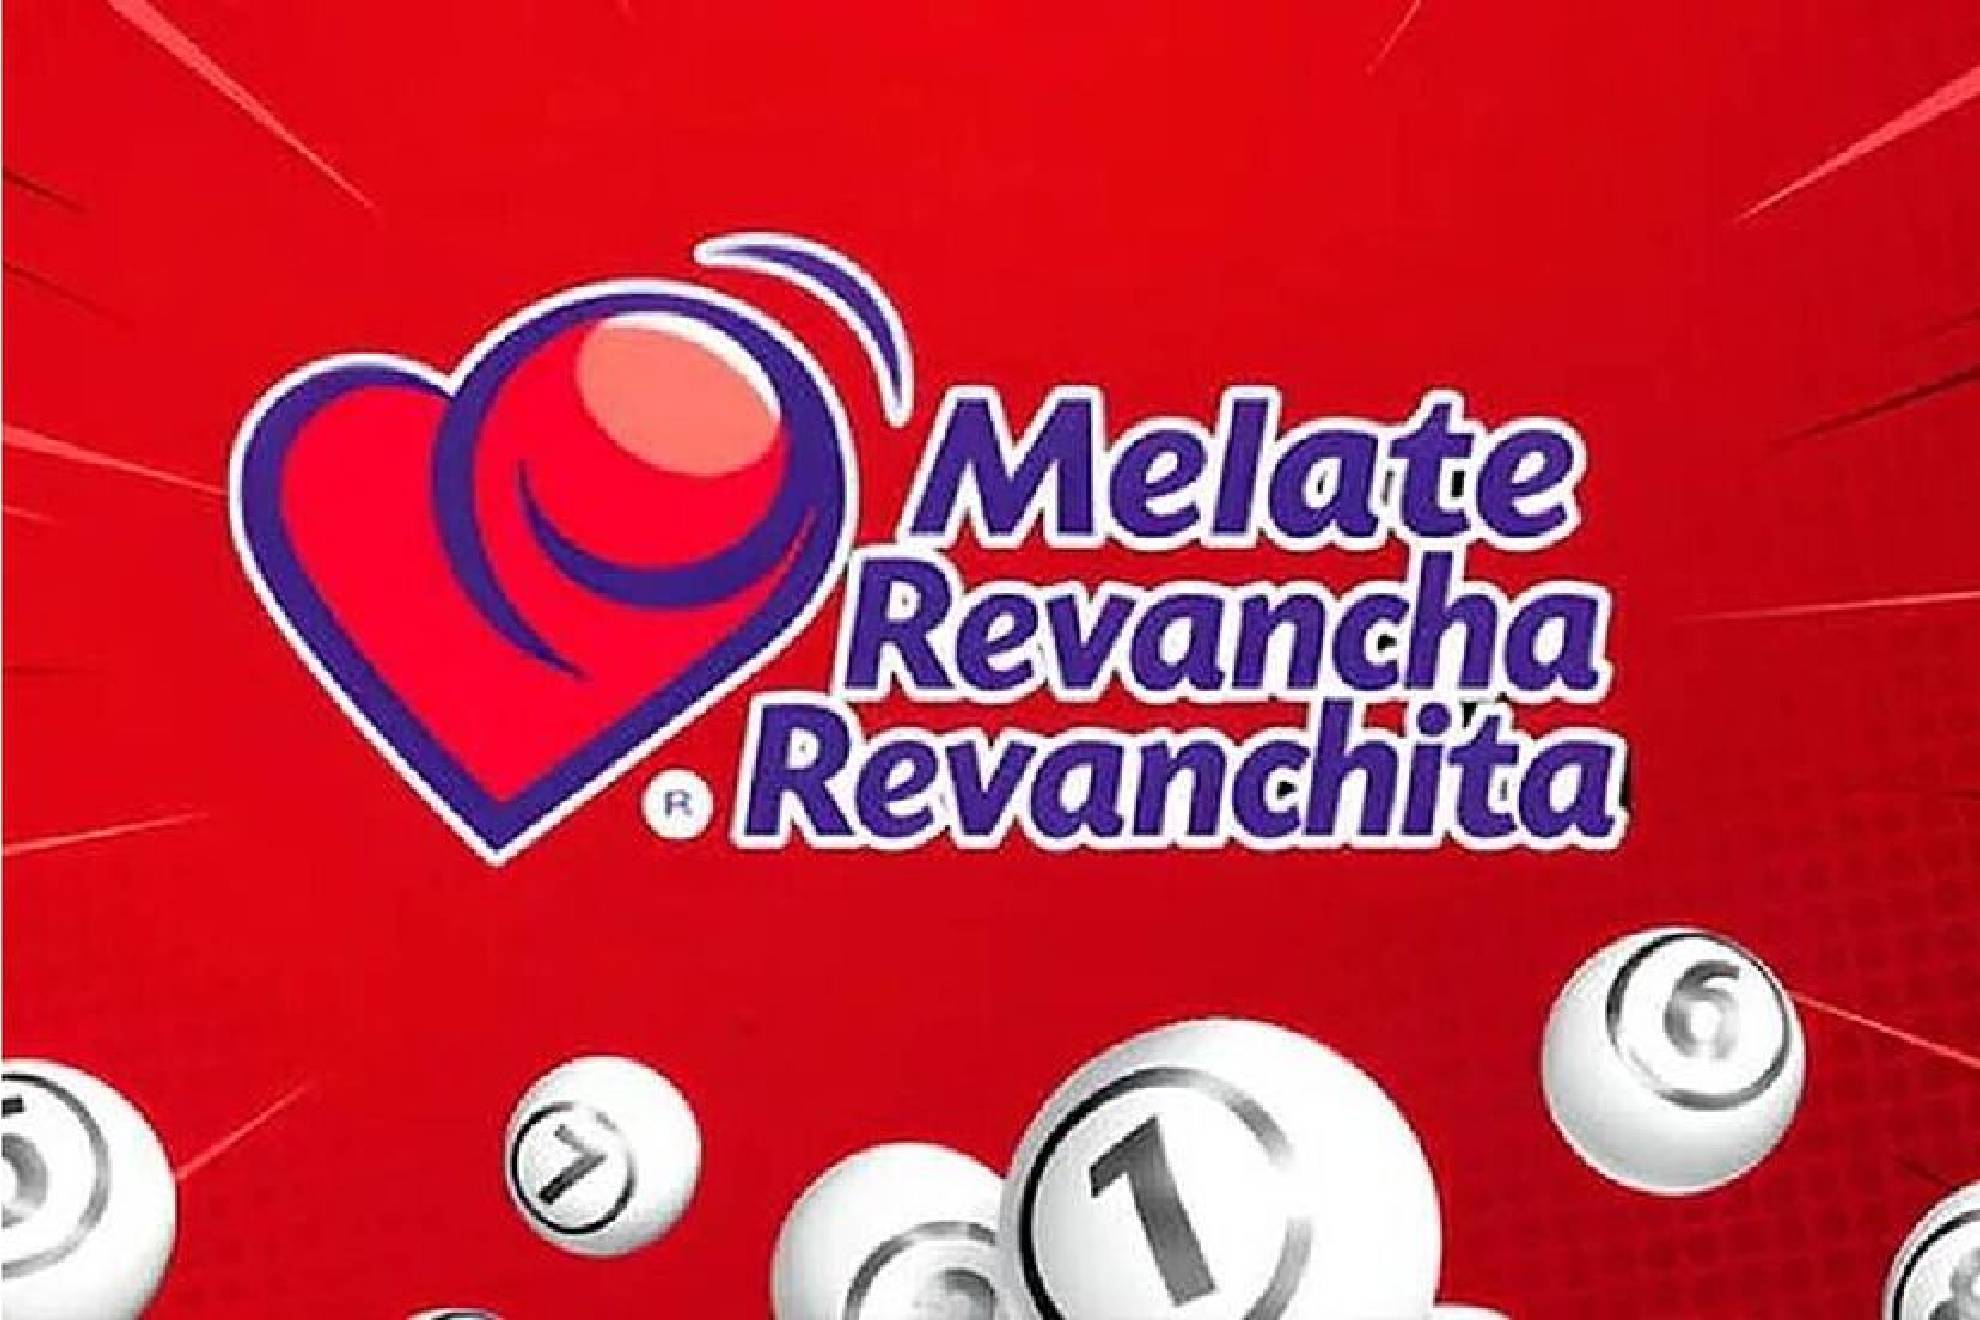 Lotera Nacional realiza el sorteo 3889 para Melate, Revancha y Revanchita.